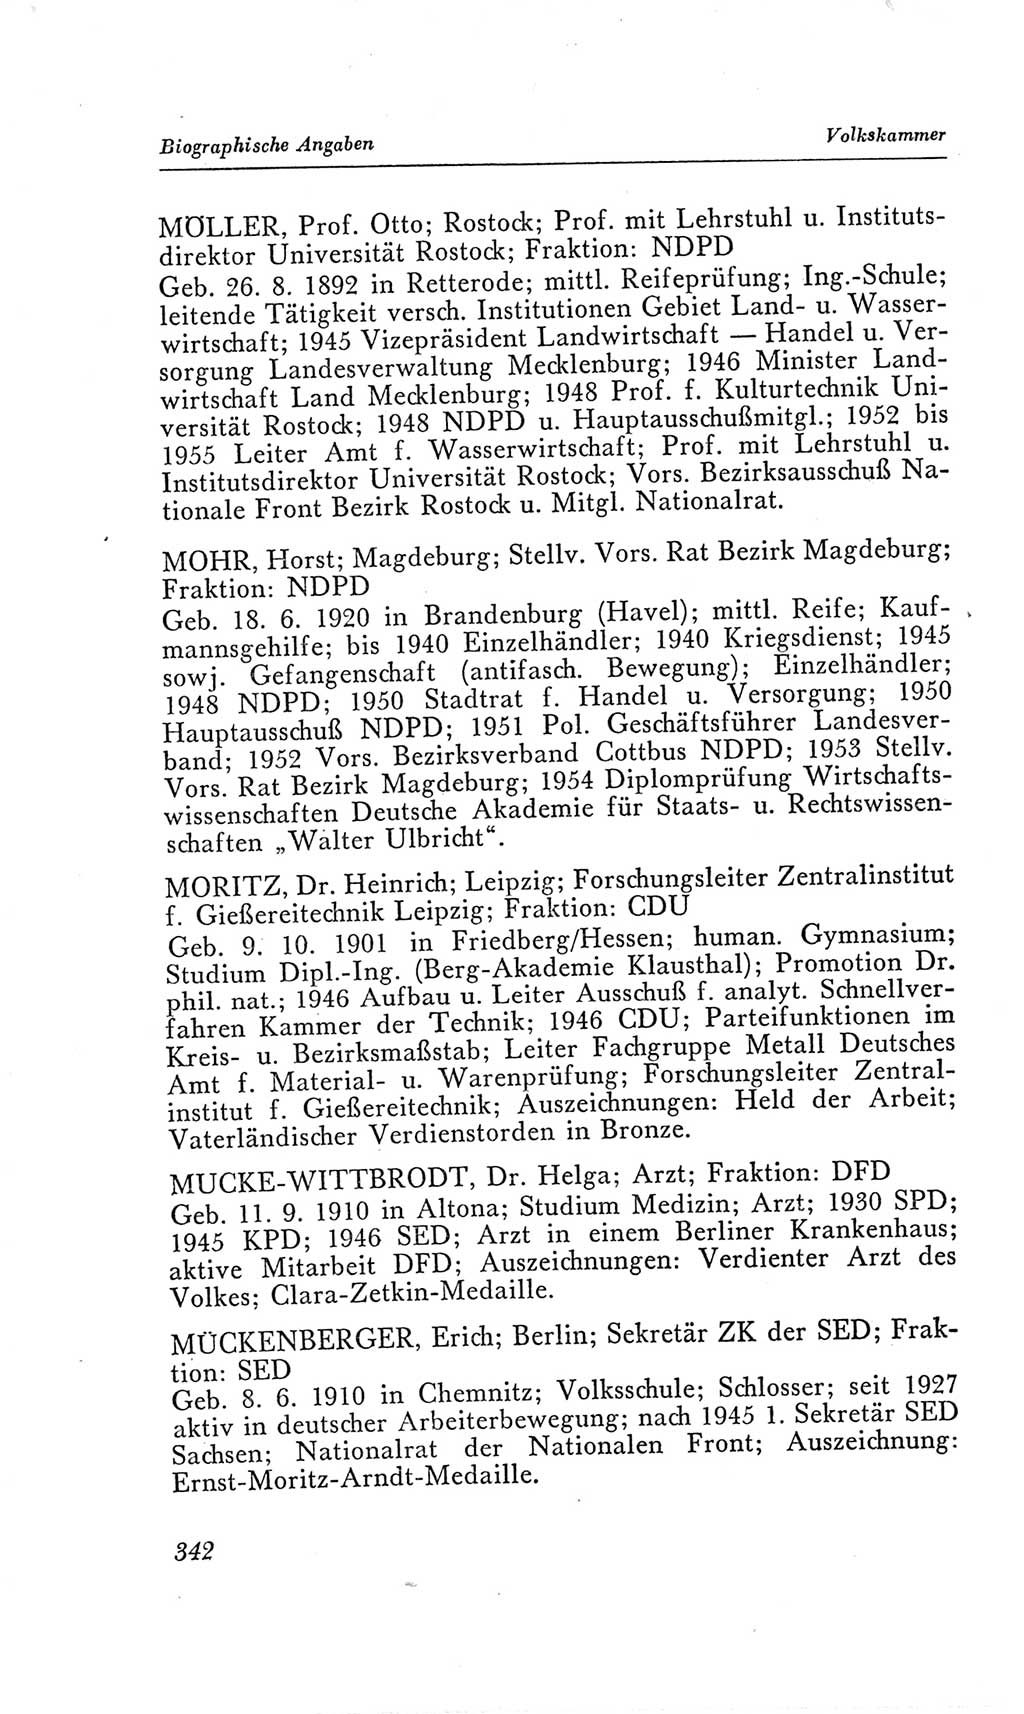 Handbuch der Volkskammer (VK) der Deutschen Demokratischen Republik (DDR), 2. Wahlperiode 1954-1958, Seite 342 (Hdb. VK. DDR, 2. WP. 1954-1958, S. 342)